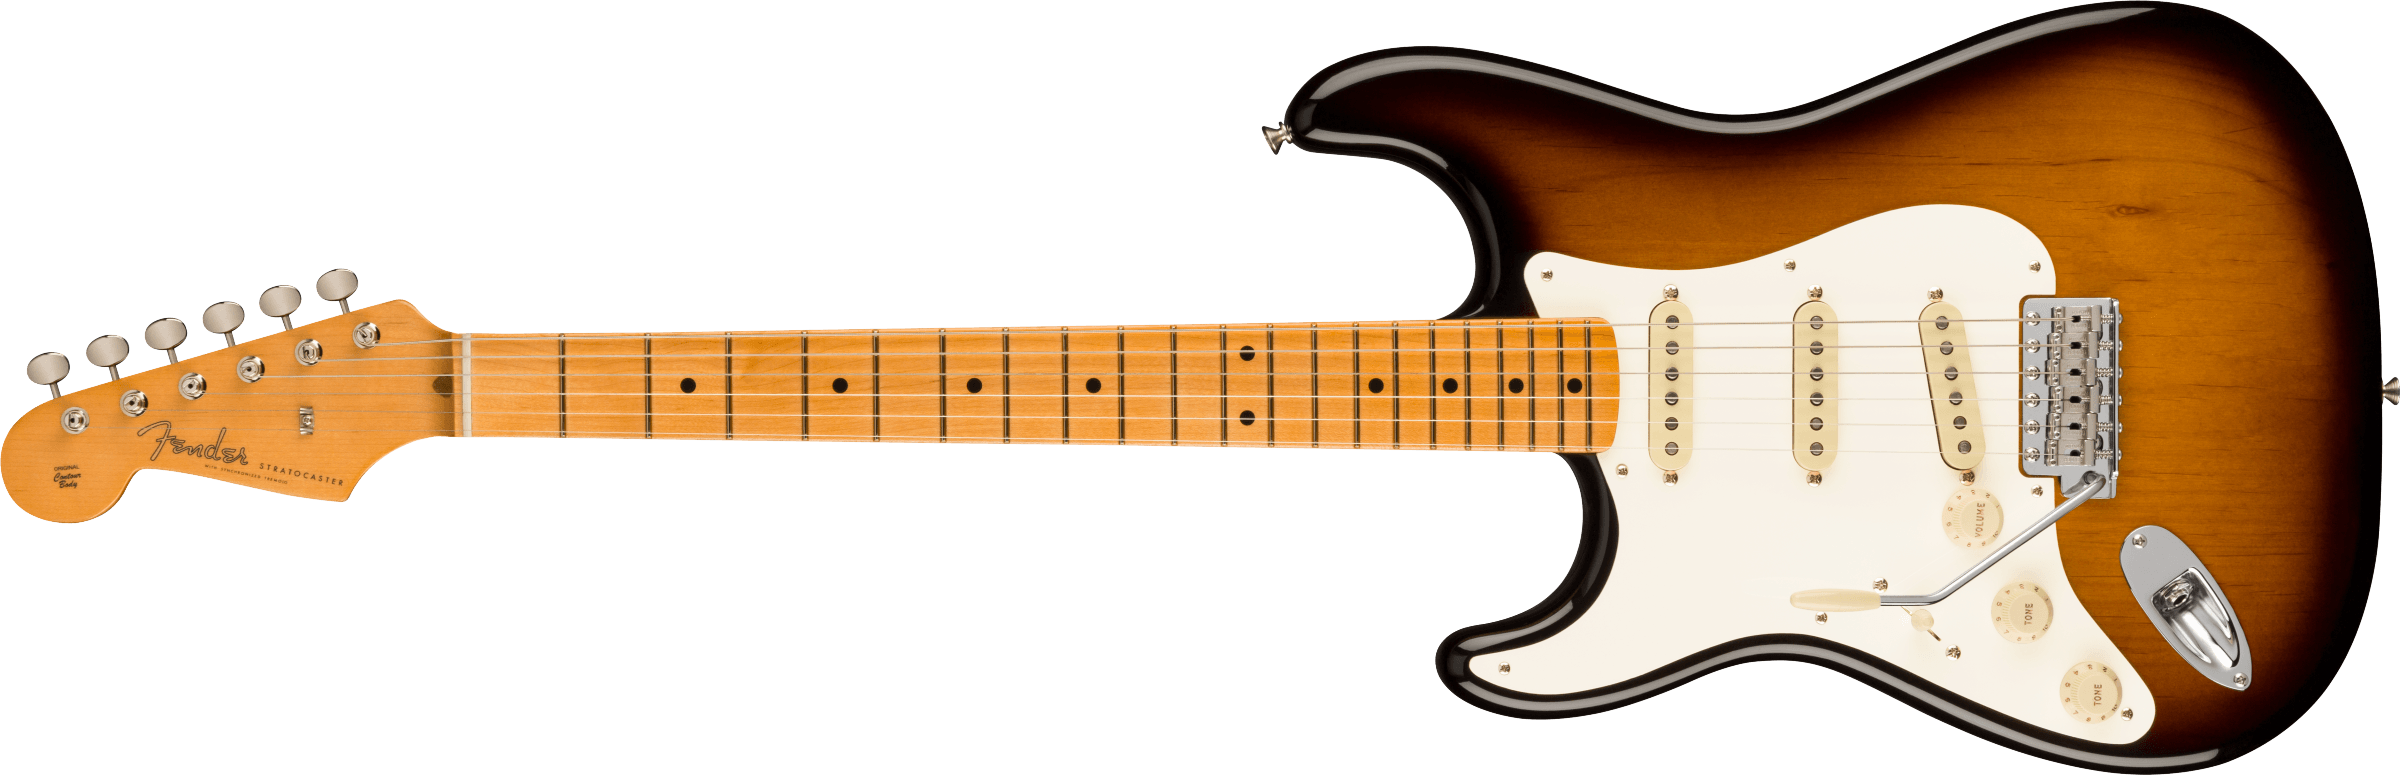 Fender American Vintage II 1957 Stratocaster Left Hand Maple Fingerboard, 2-Color Sunburst 0110242803